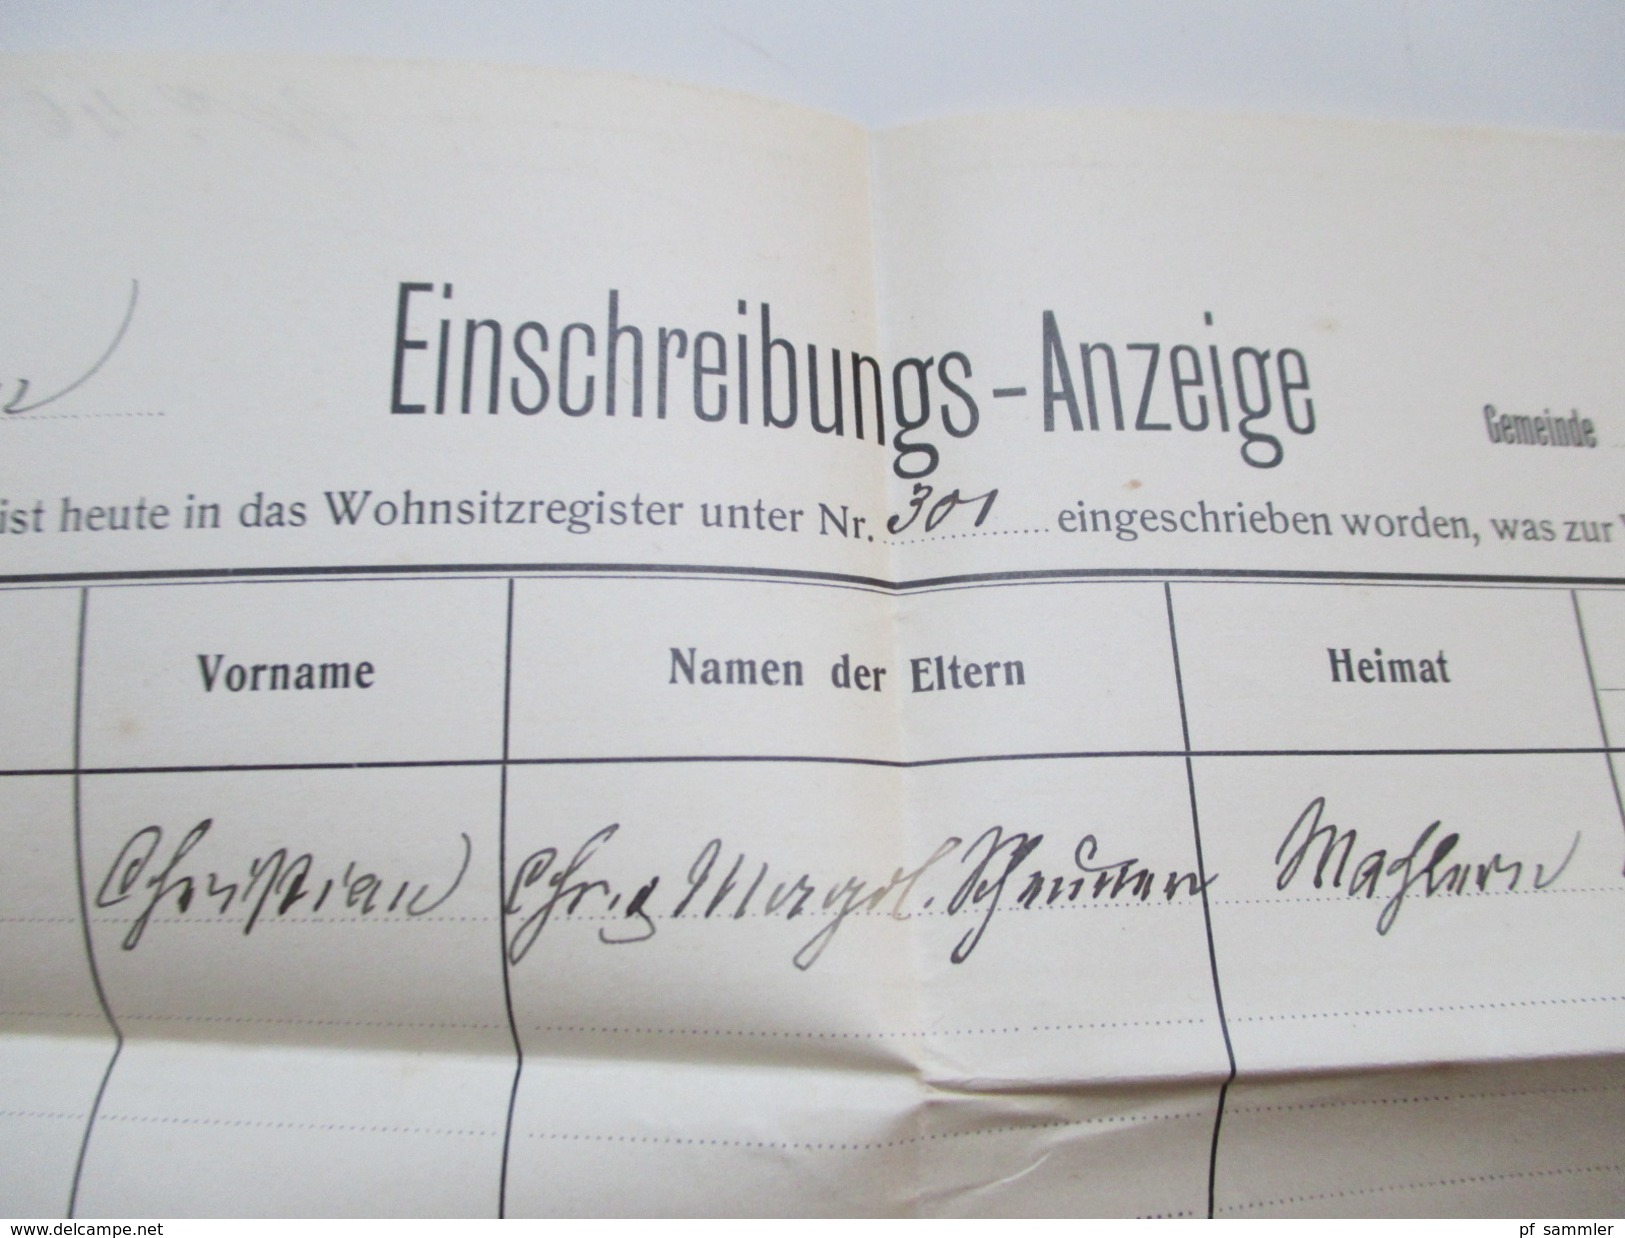 Schweiz 1916 / 39 Behördenpost / Officiel. Portofrei. insgesamt 9 Belege / Karten! Interessant?!?